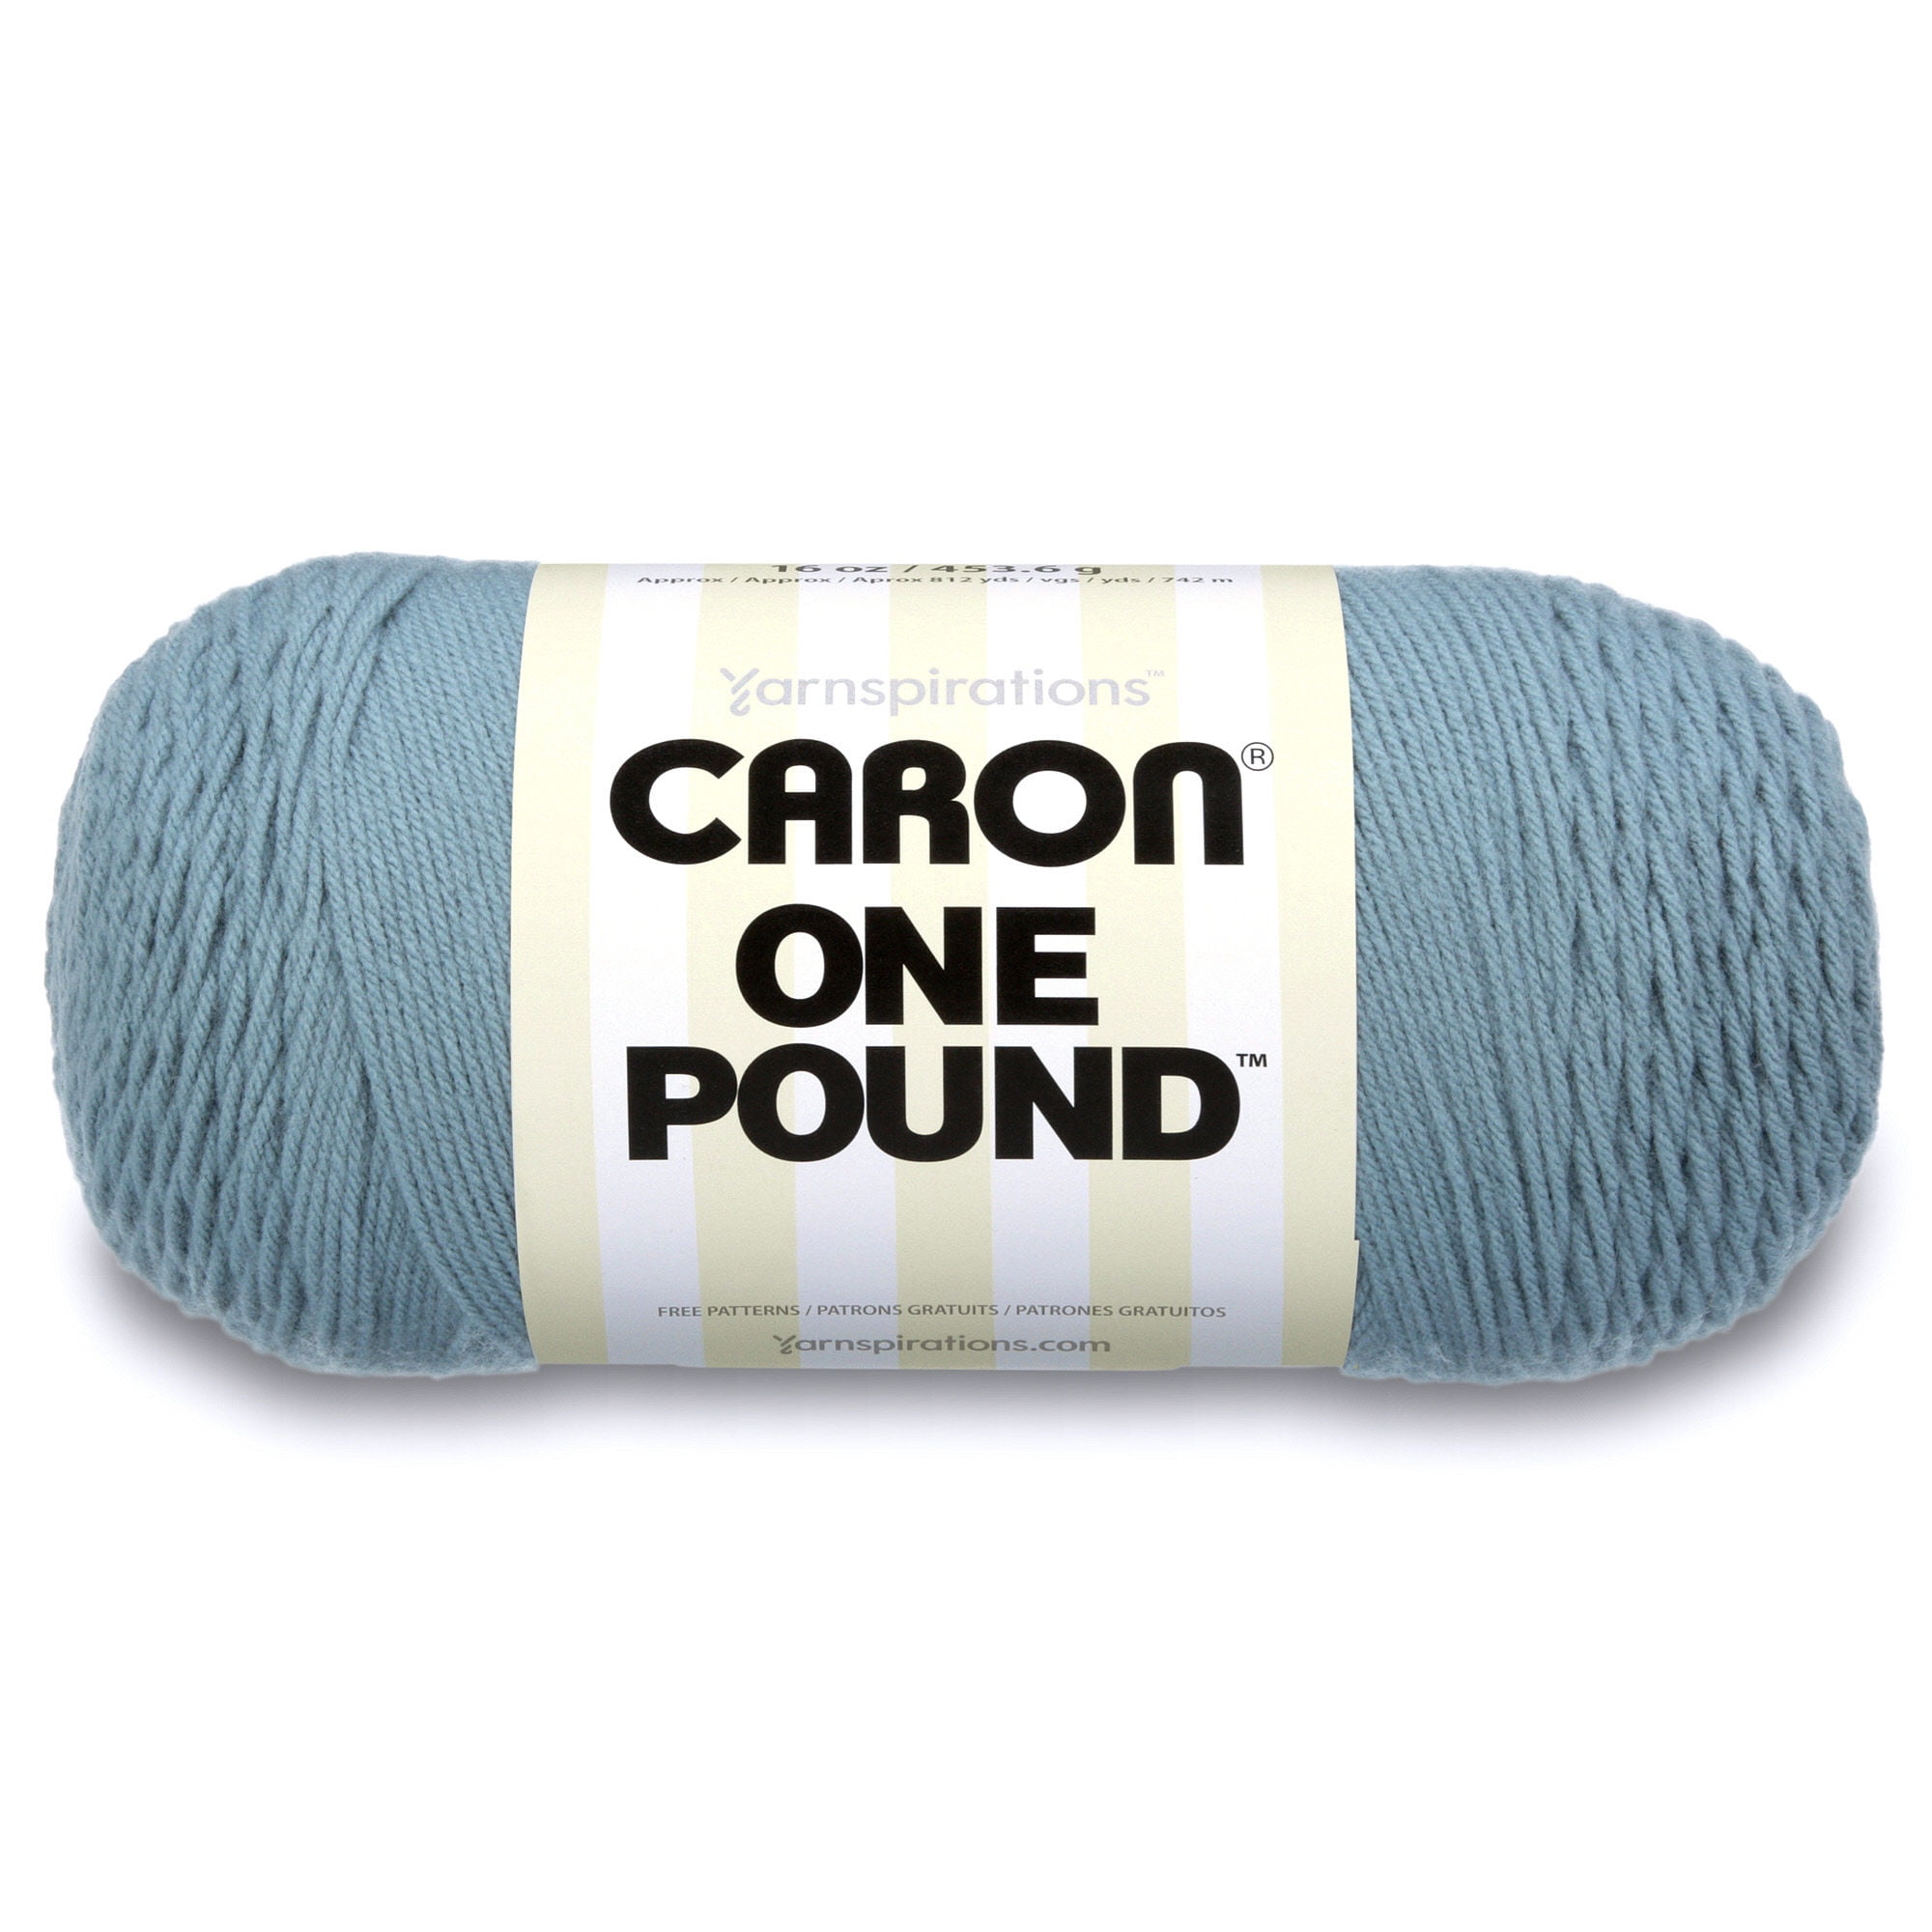 CARON ONE POUND YARN (454G/16OZ), CLARET 